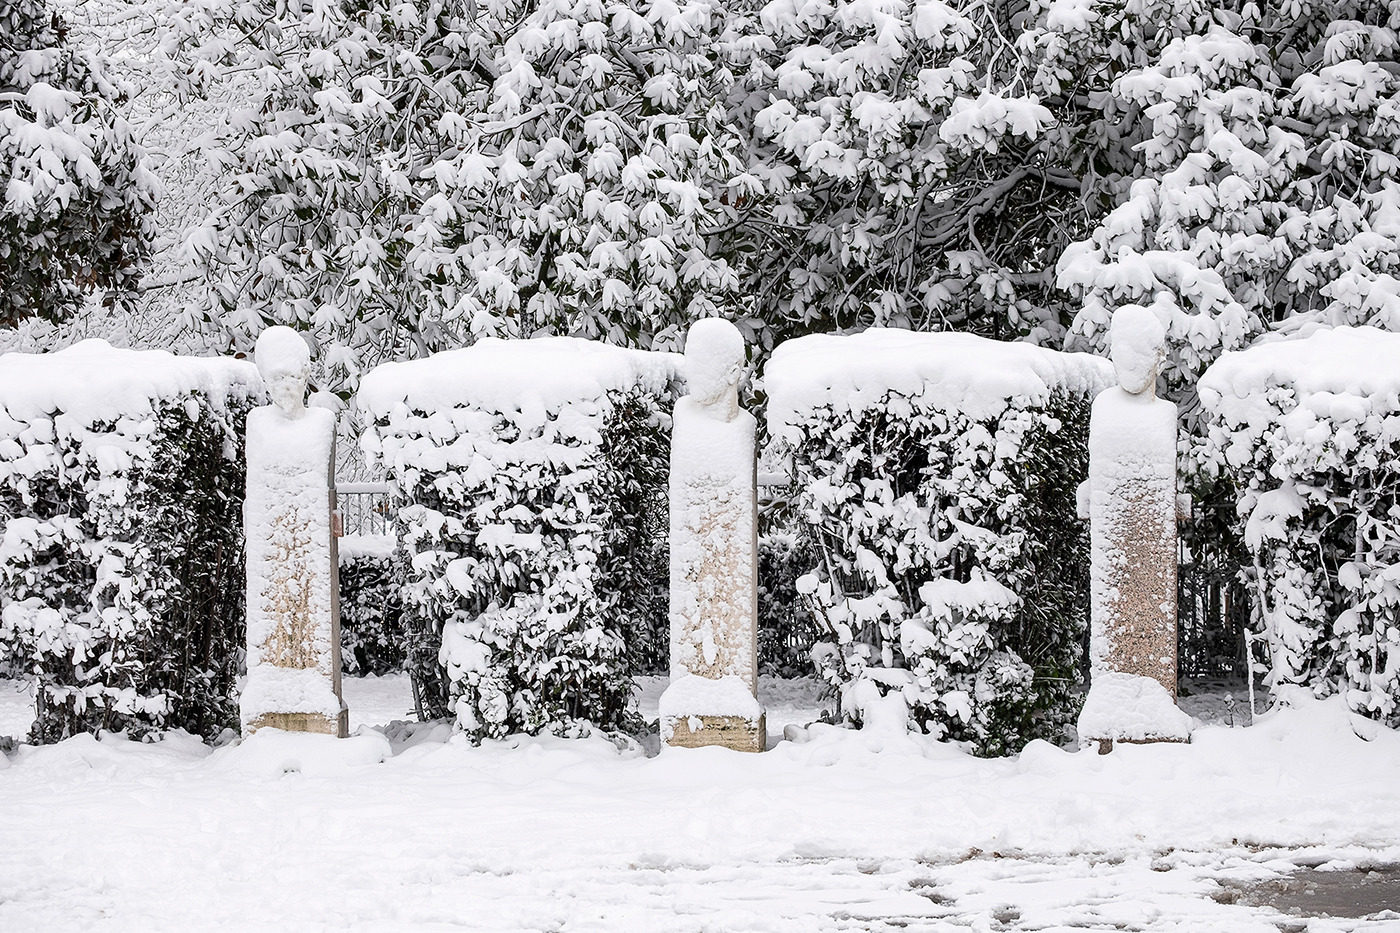 Rome villa borghese winter snow cold White trees fountain